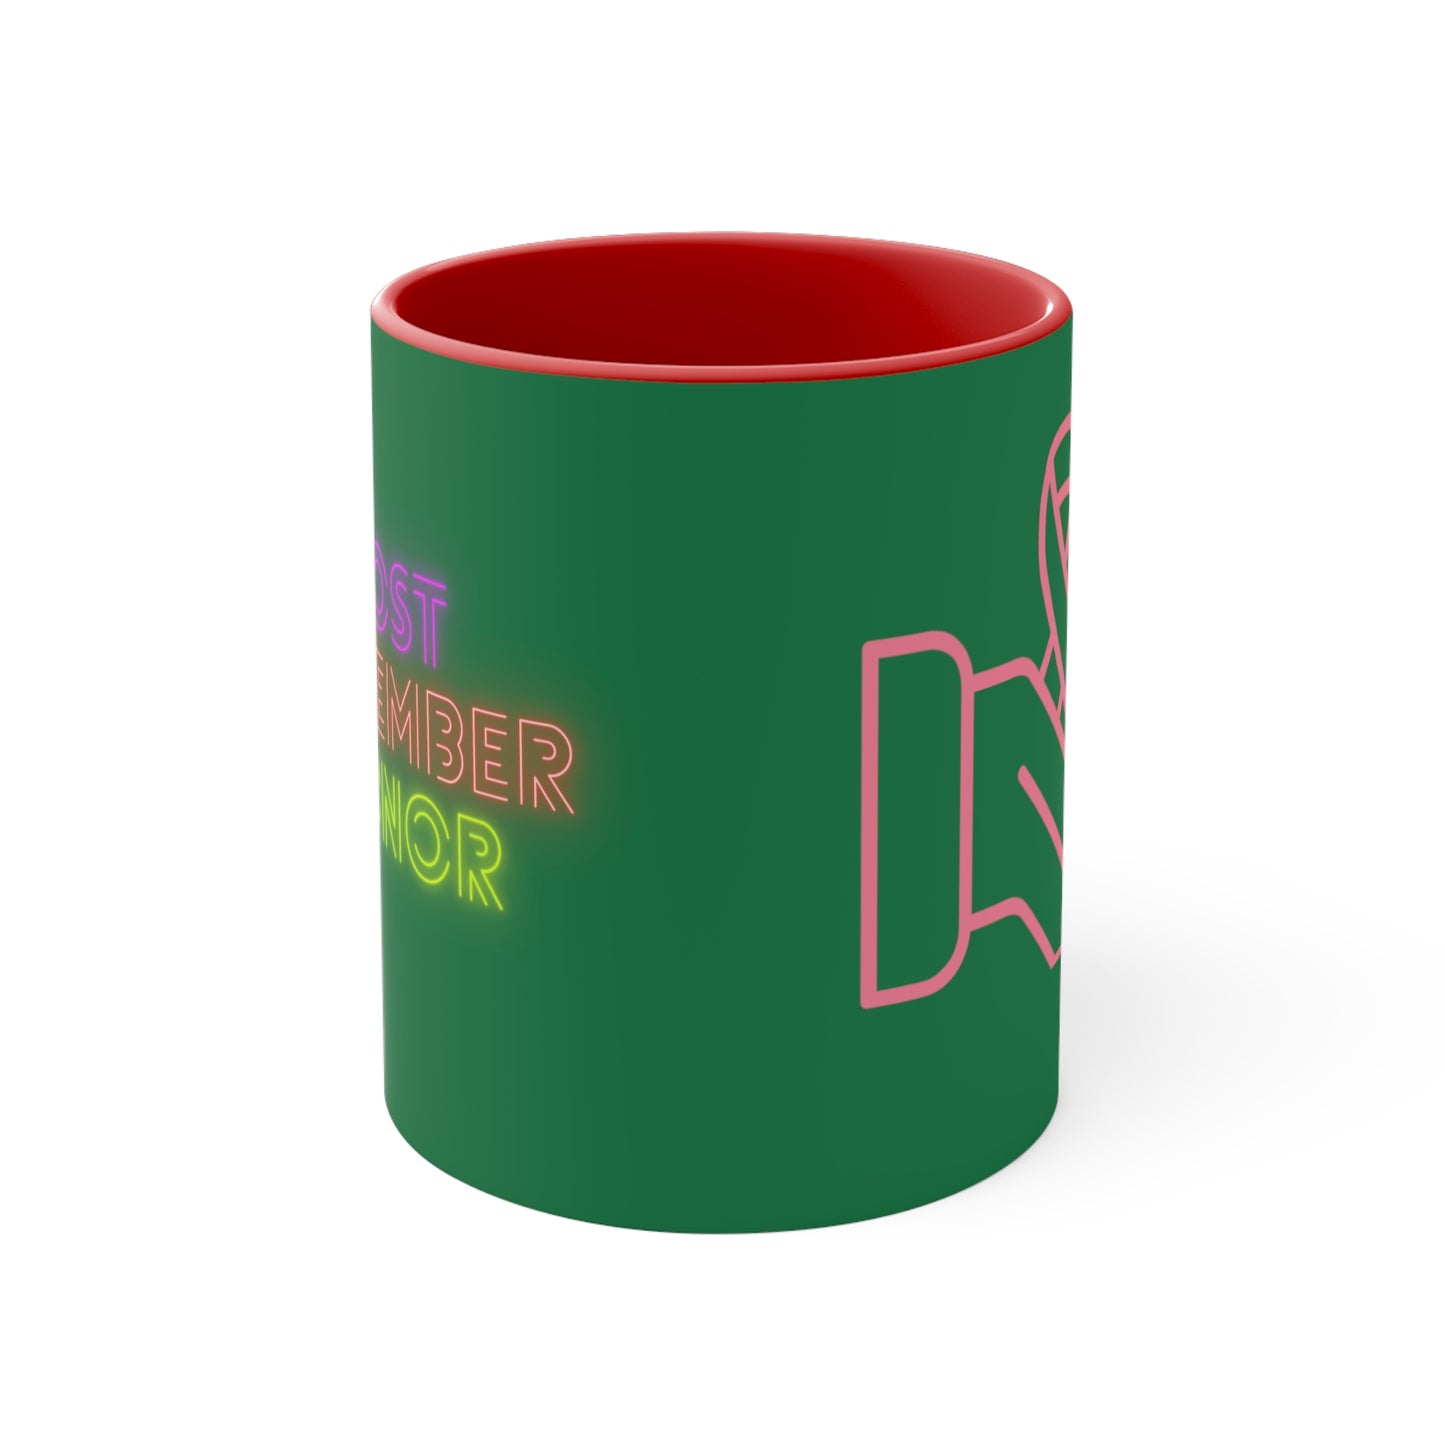 Accent Coffee Mug, 11oz: Fight Cancer Dark Green